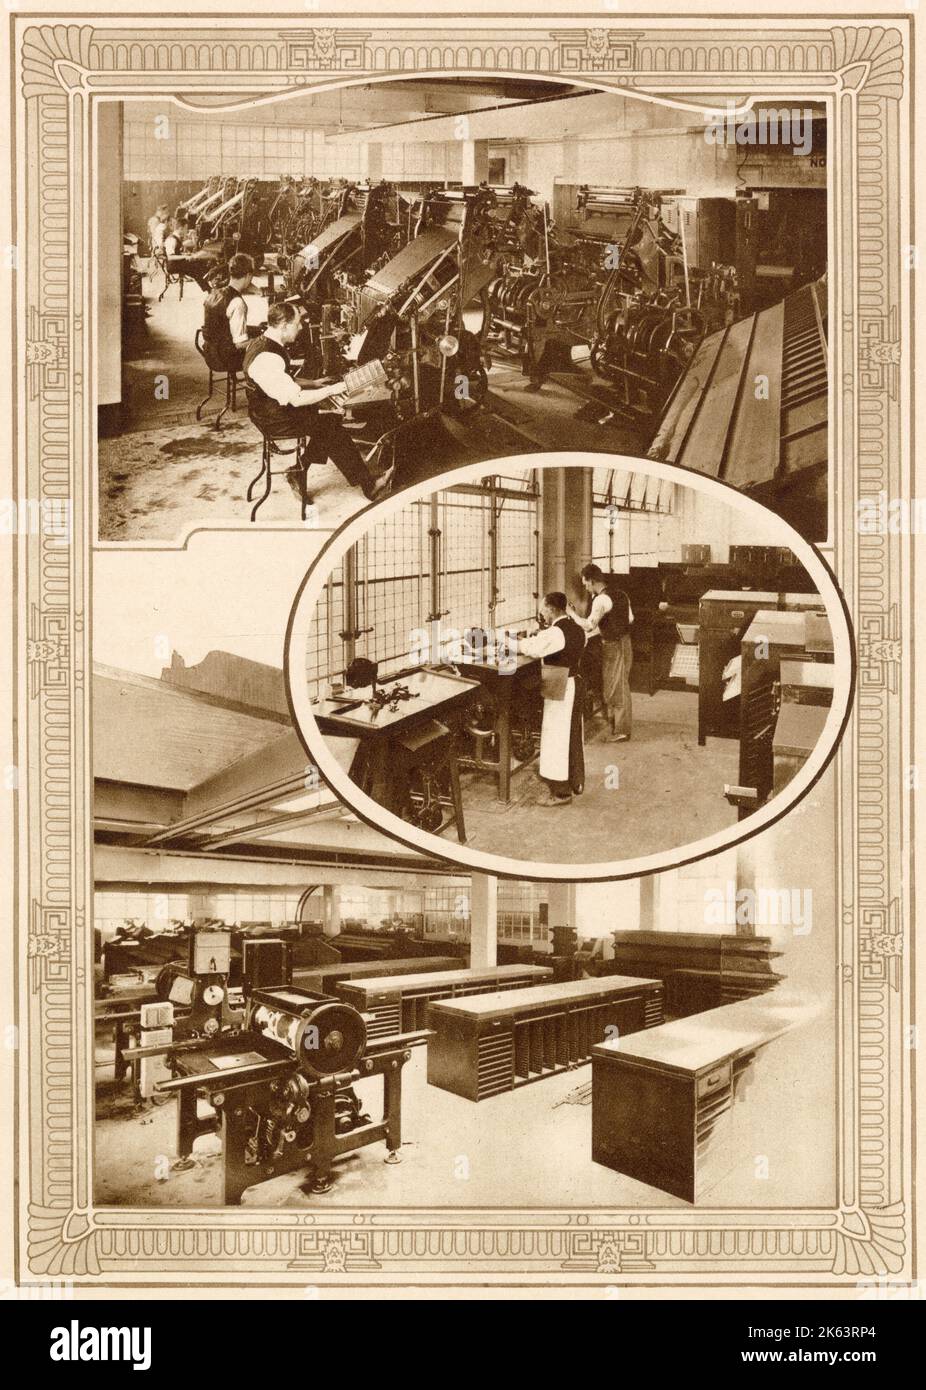 Einige der modernen linotype-Maschinen, die den Typ für die Daily Mail im Northcliffe House in Kensington London vorgaben. (Mitte) Ludlow-Rollen, mit denen die Anzeigetypen für Überschriften und Anzeigen schnell bearbeitet werden. (Unten) ein weiterer Bereich des Kompositionsraums mit Maschinen für Matrizen im Vordergrund. Stockfoto